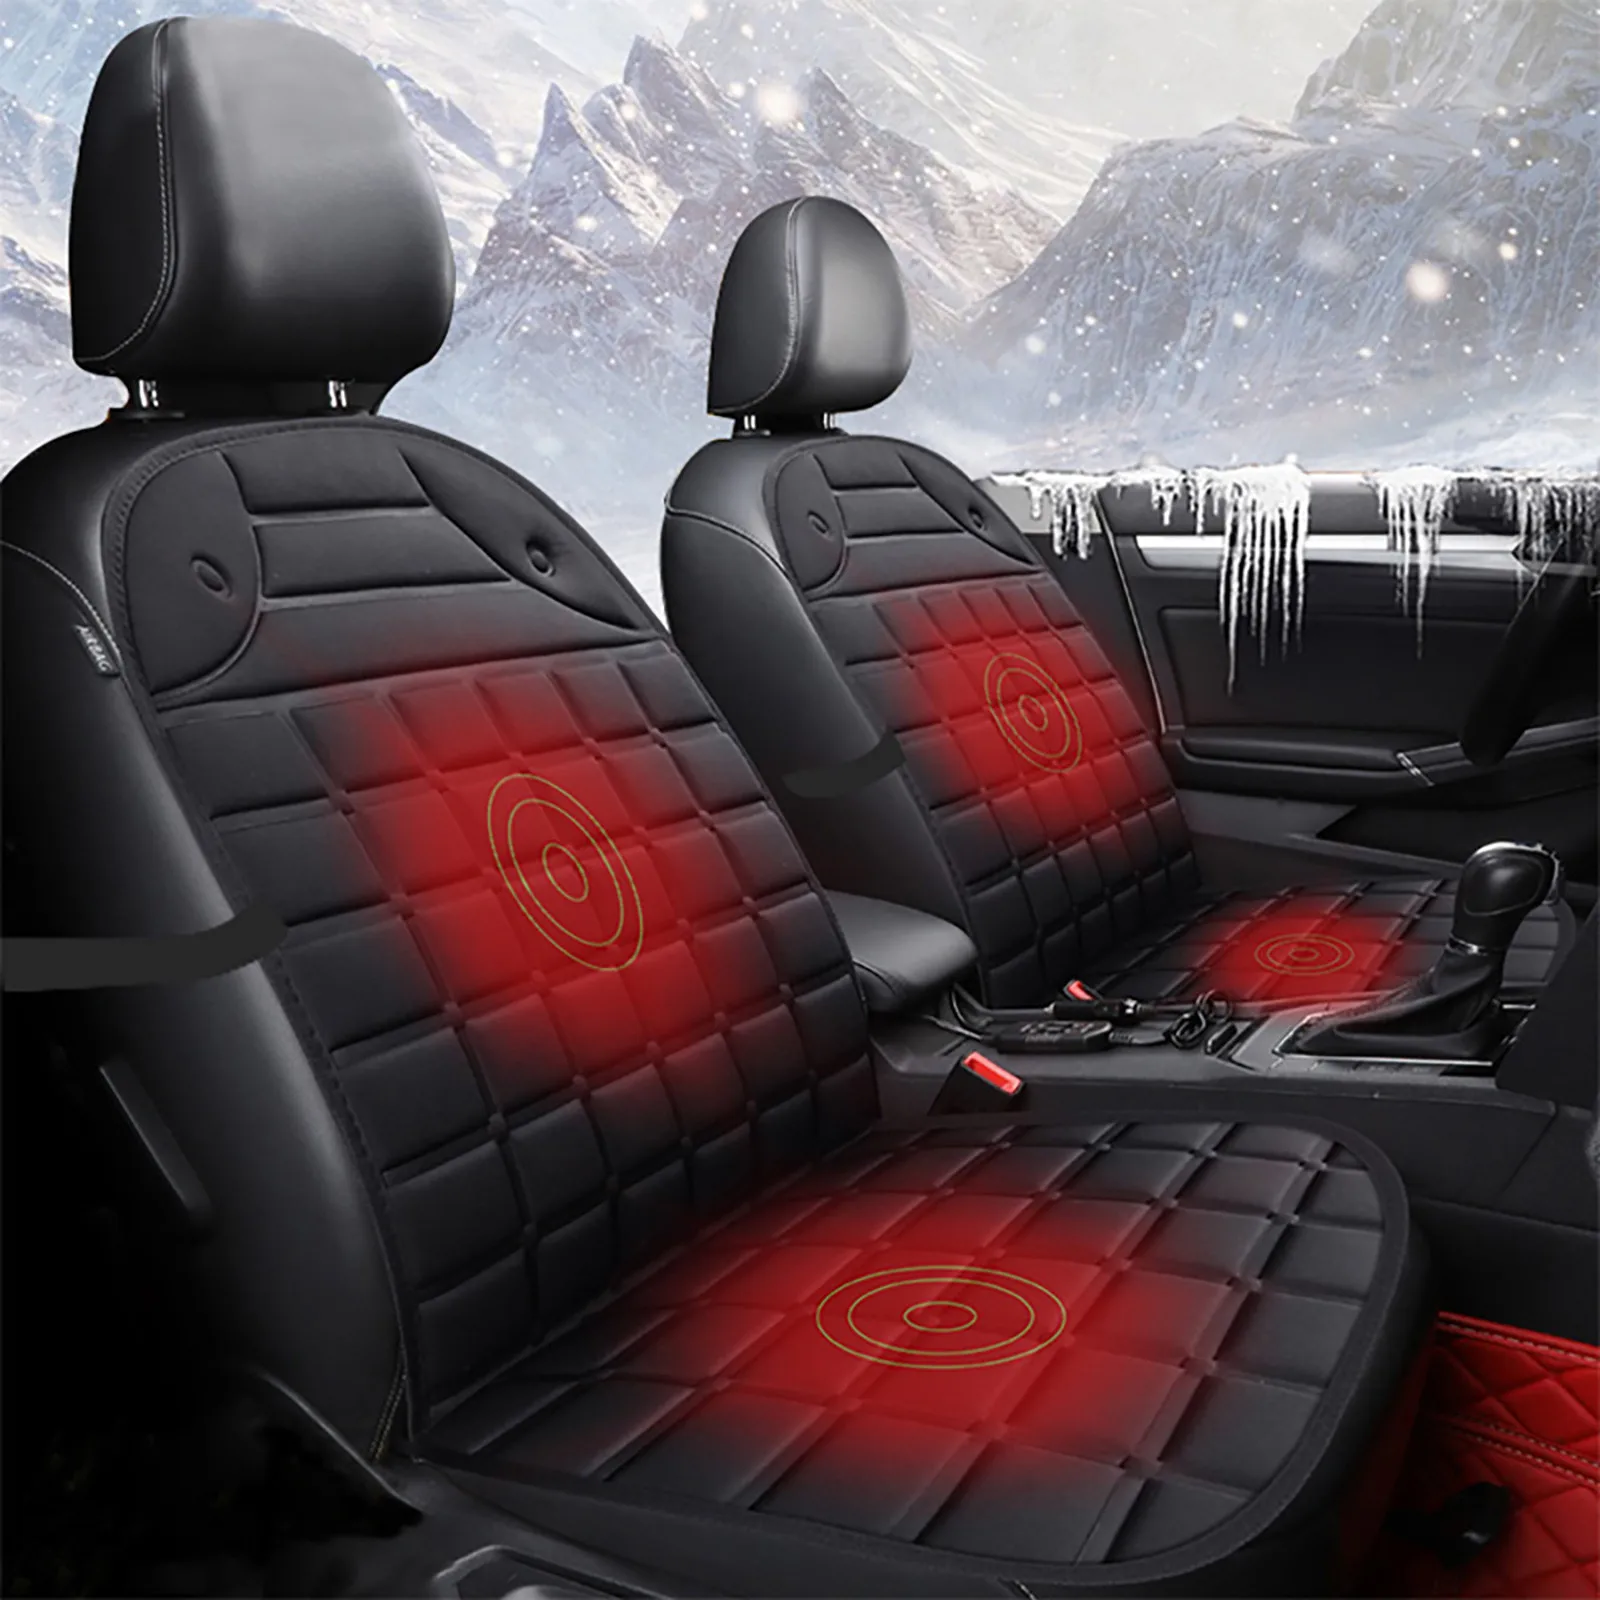 Tanie 12V Auto elektryczne podgrzewane siedzenie samochodu poduszki fotelik samochodowy poduszka elektryczna na zimę podgrzewane